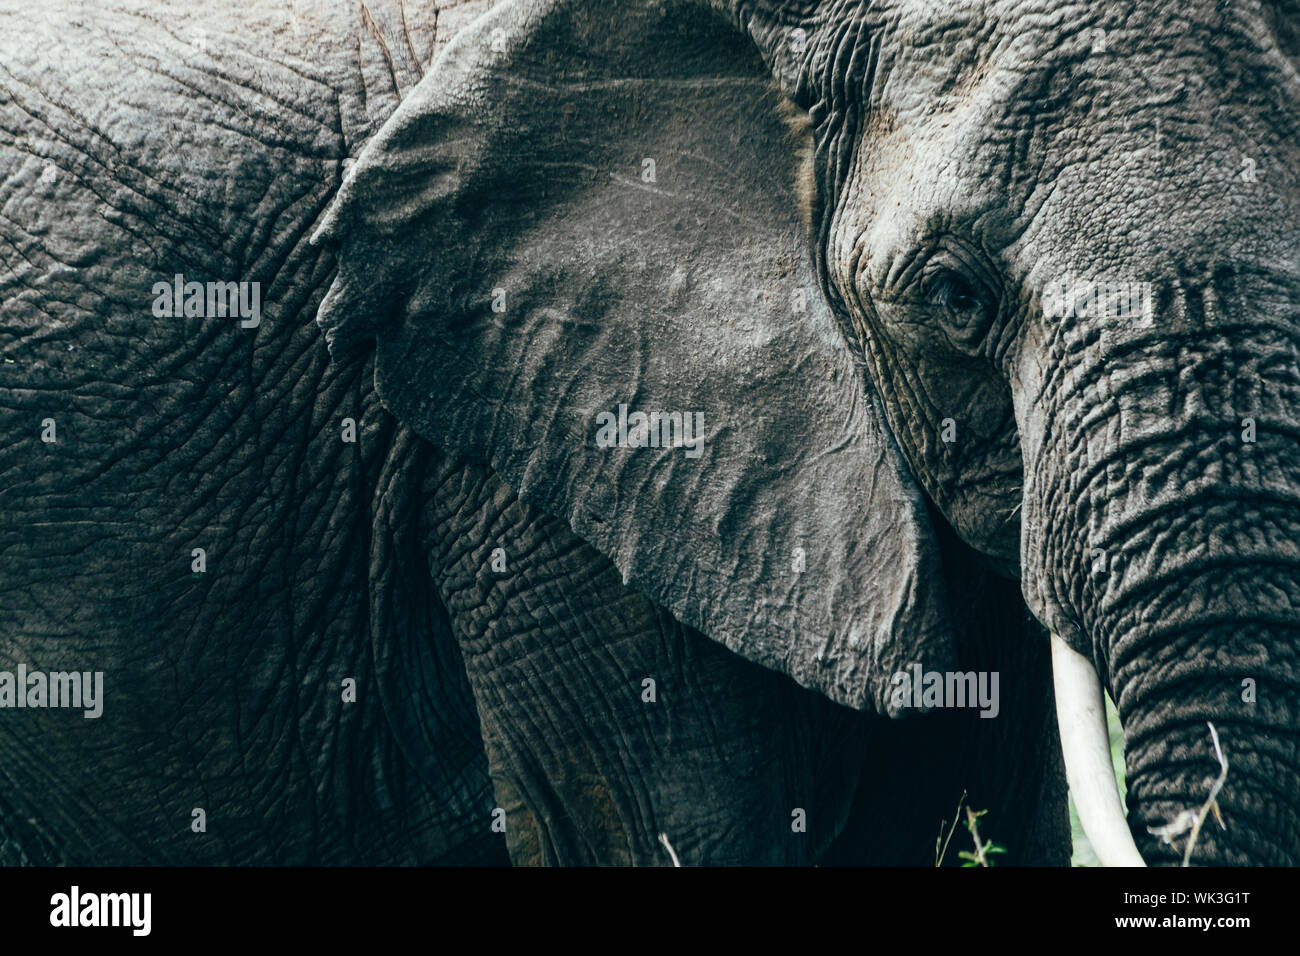 Elefant Closeup Portrait füllen alle Frame Stockfoto